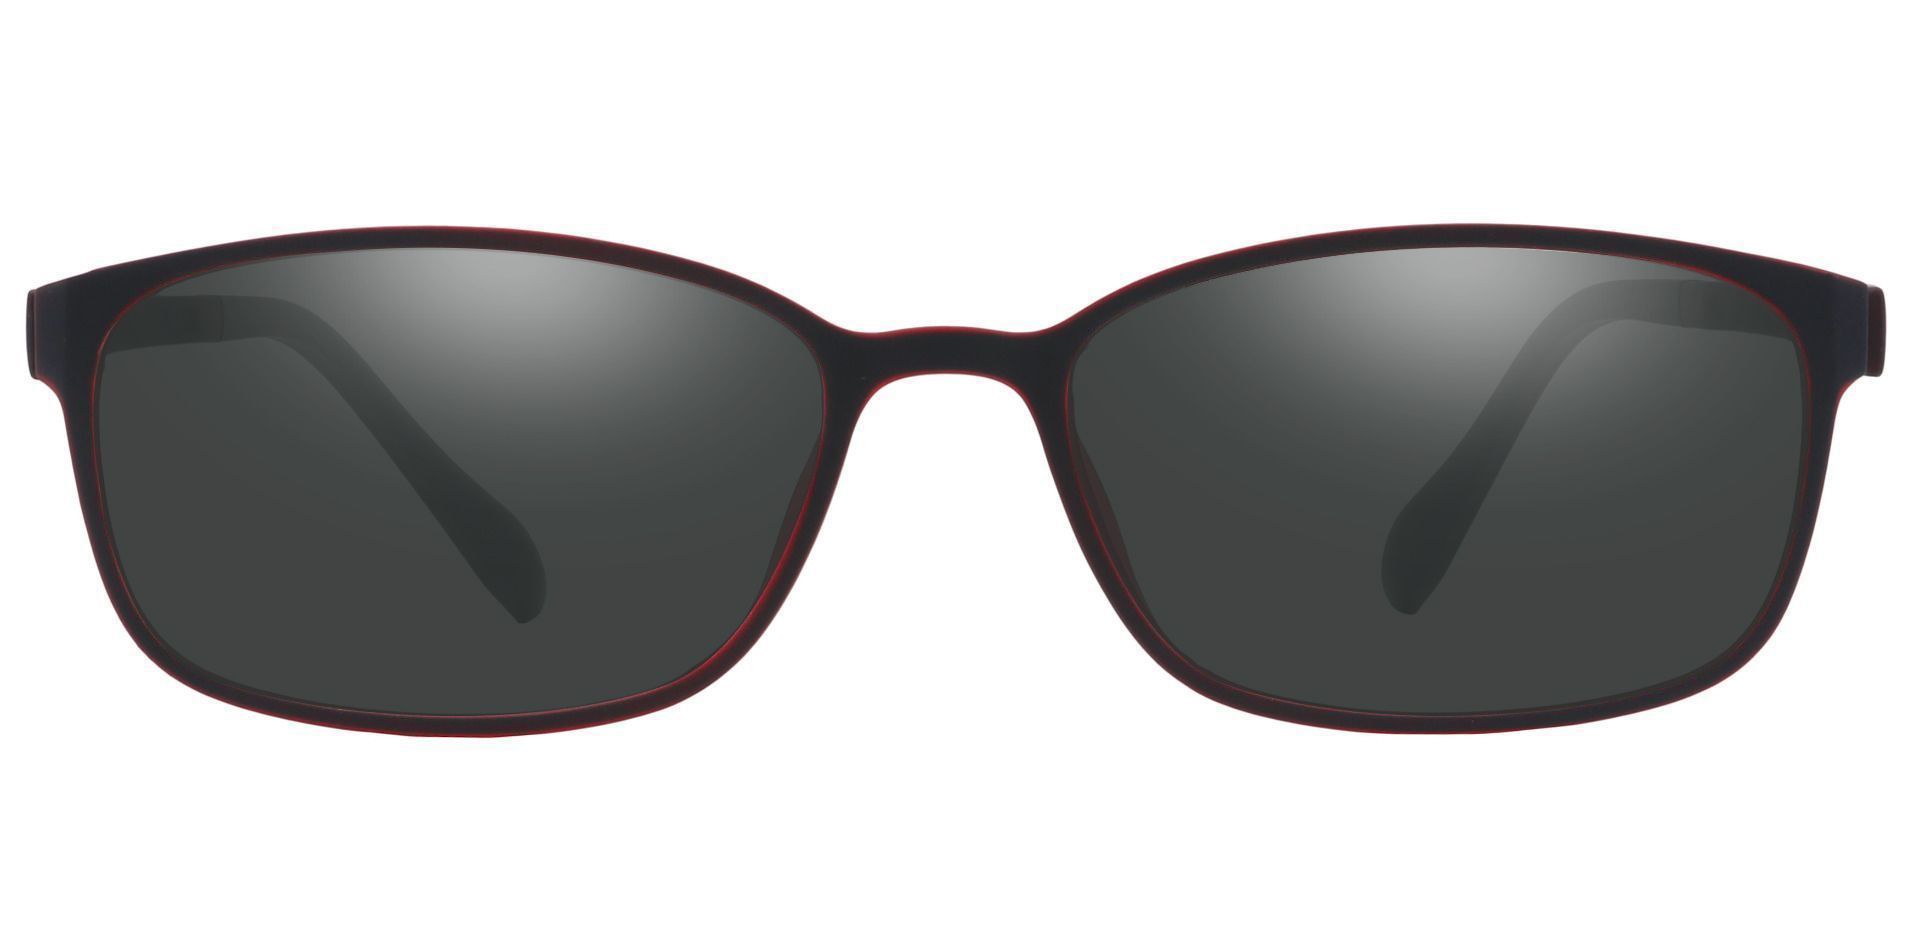 Merlot Rectangle Progressive Sunglasses - Red Frame With Gray Lenses